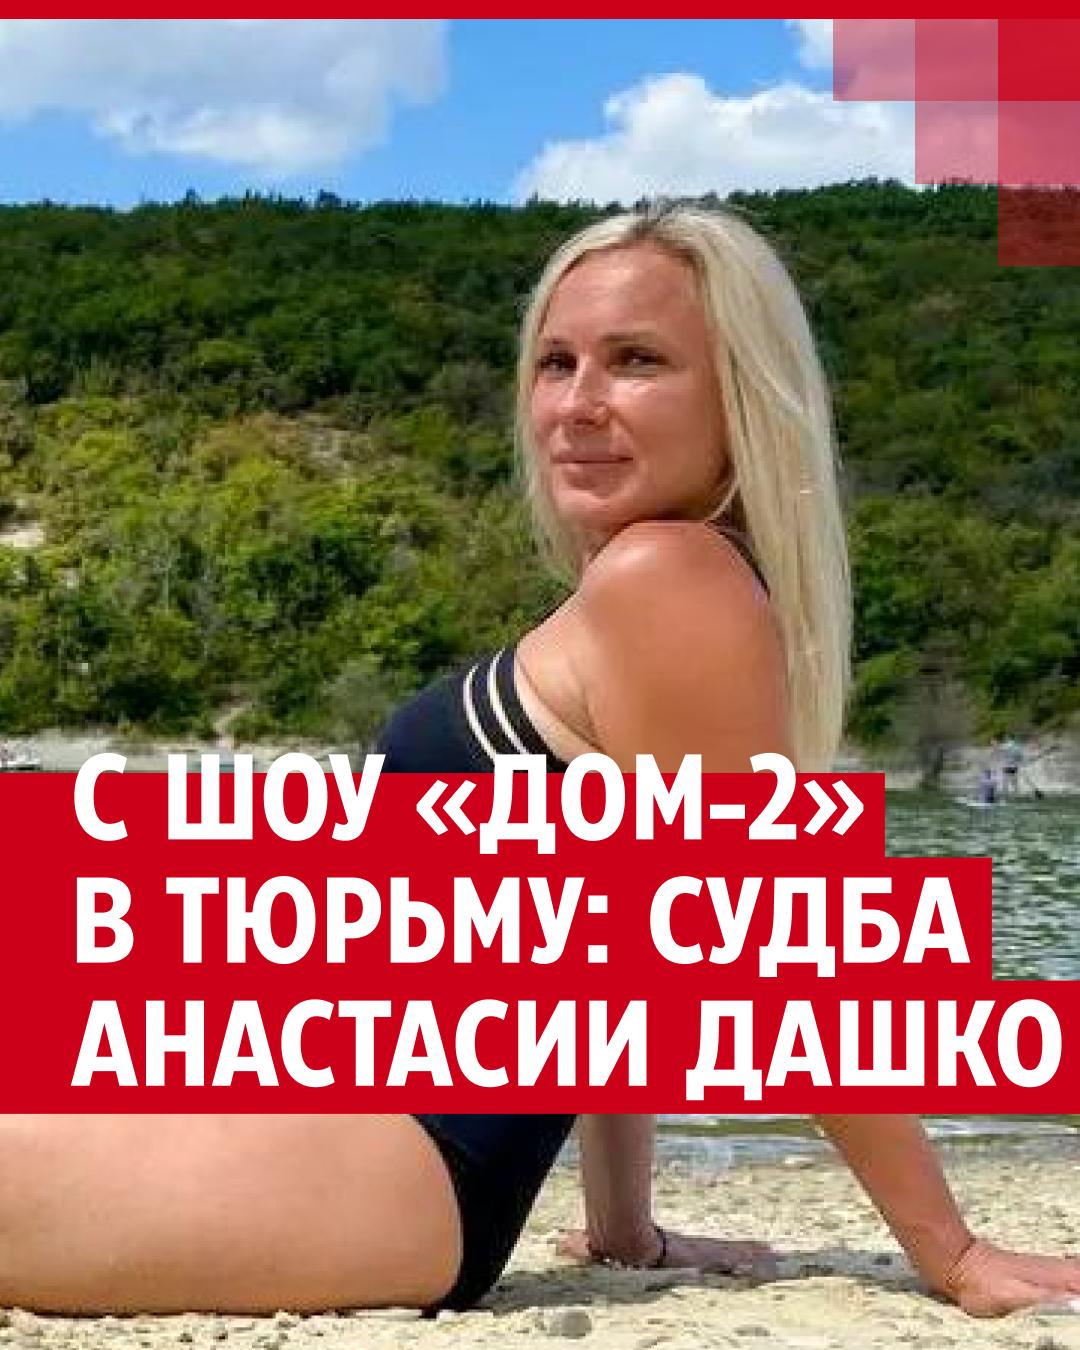 Анастасия дашко голая порно видео на beton-krasnodaru.ru